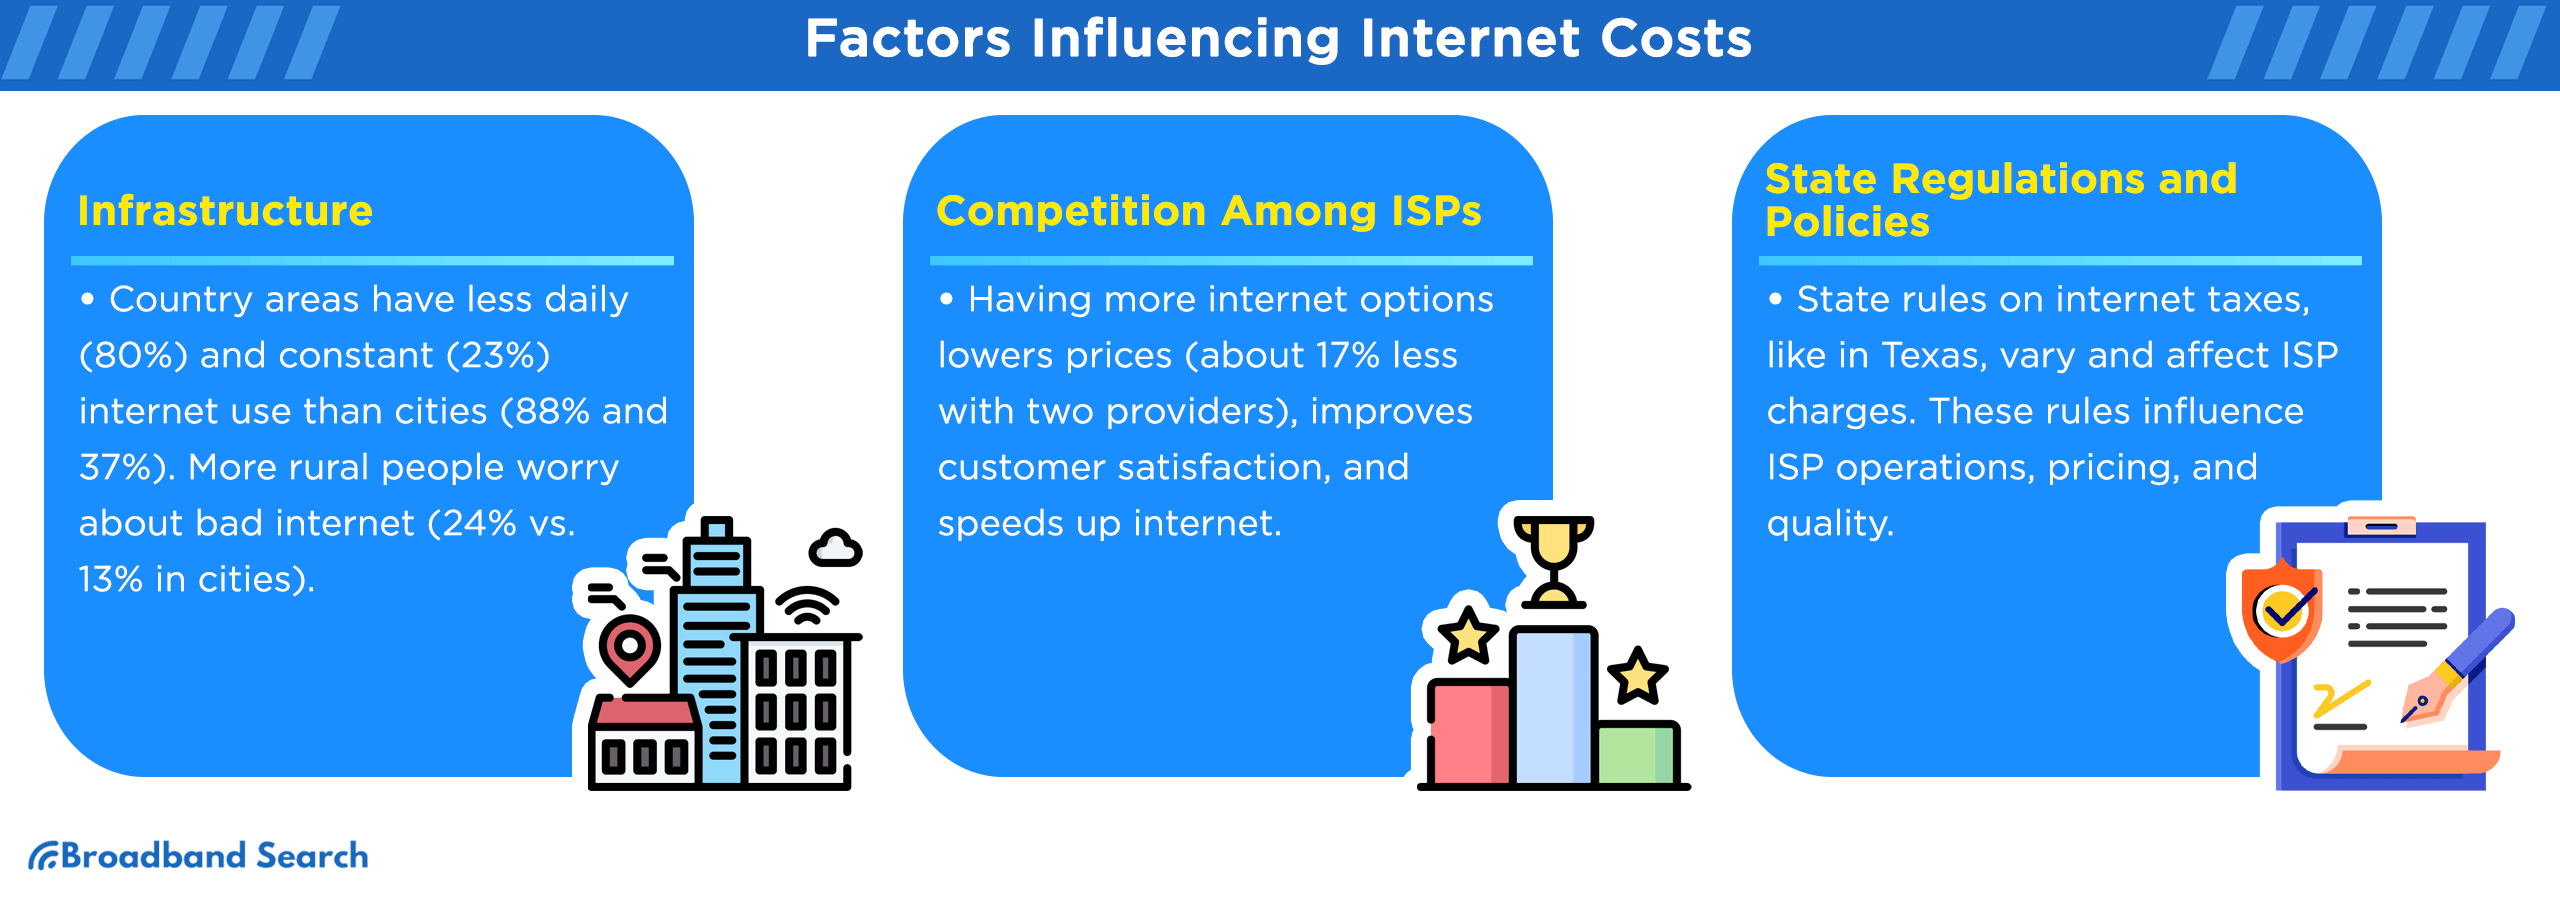 Factors influencing internet costs